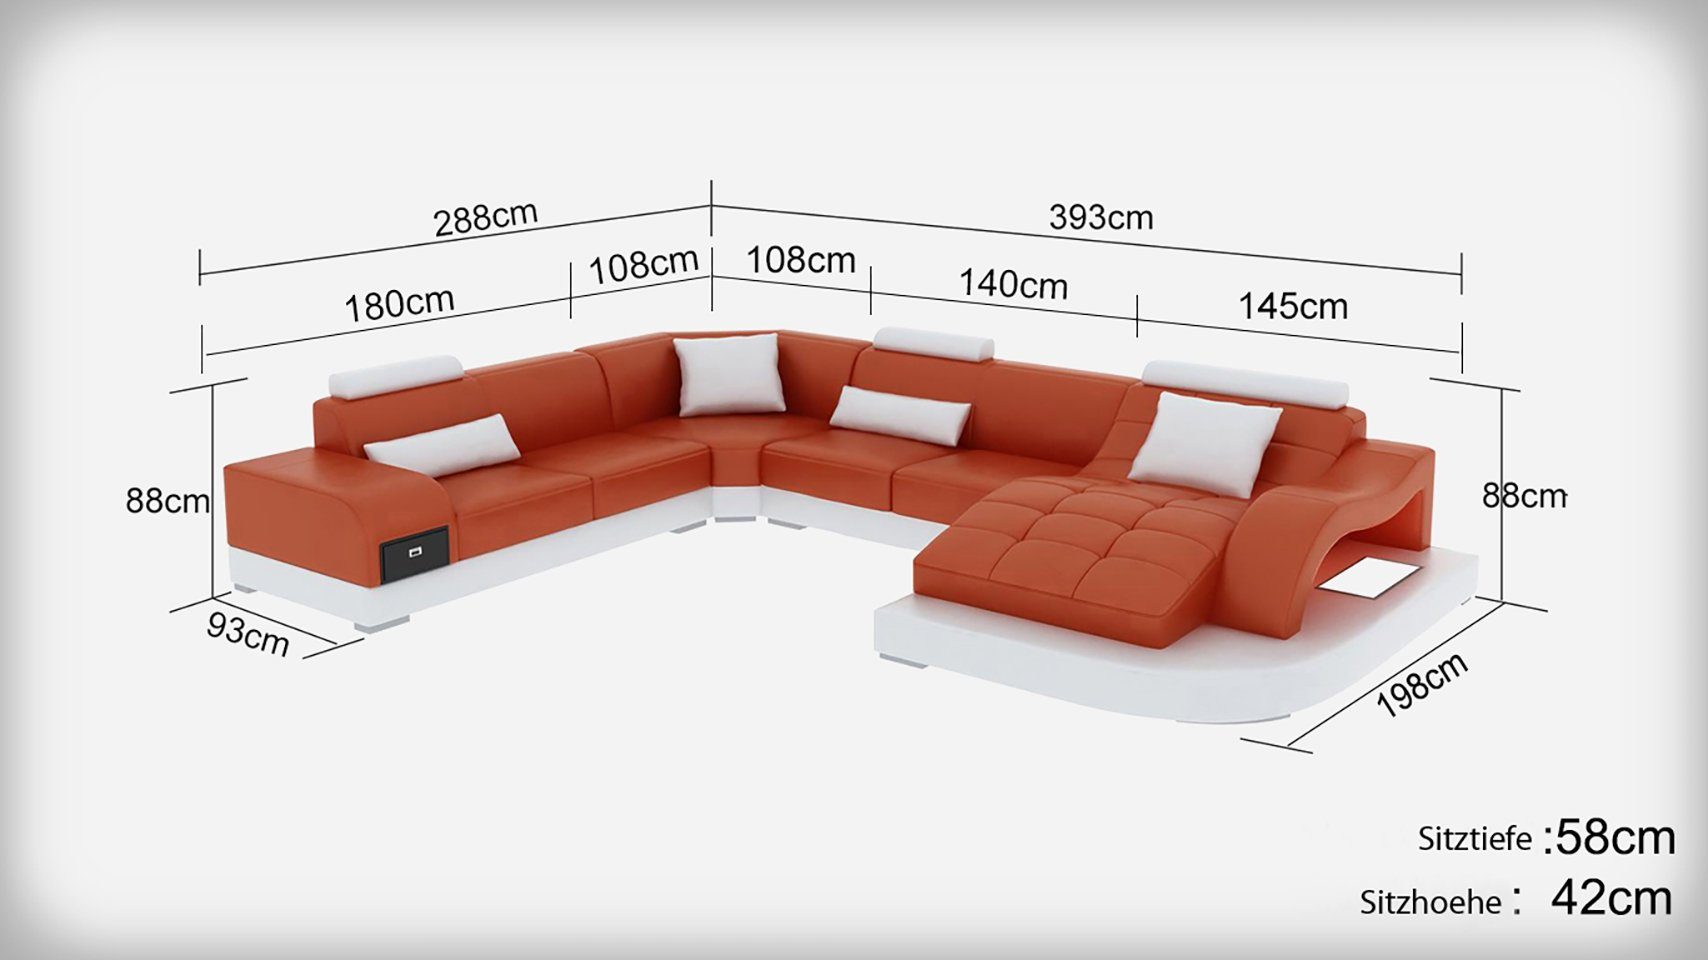 JVmoebel Ecksofa, Leder Sofa Moderne Sitz Couch Polster Design Eck Wohnlandschaft